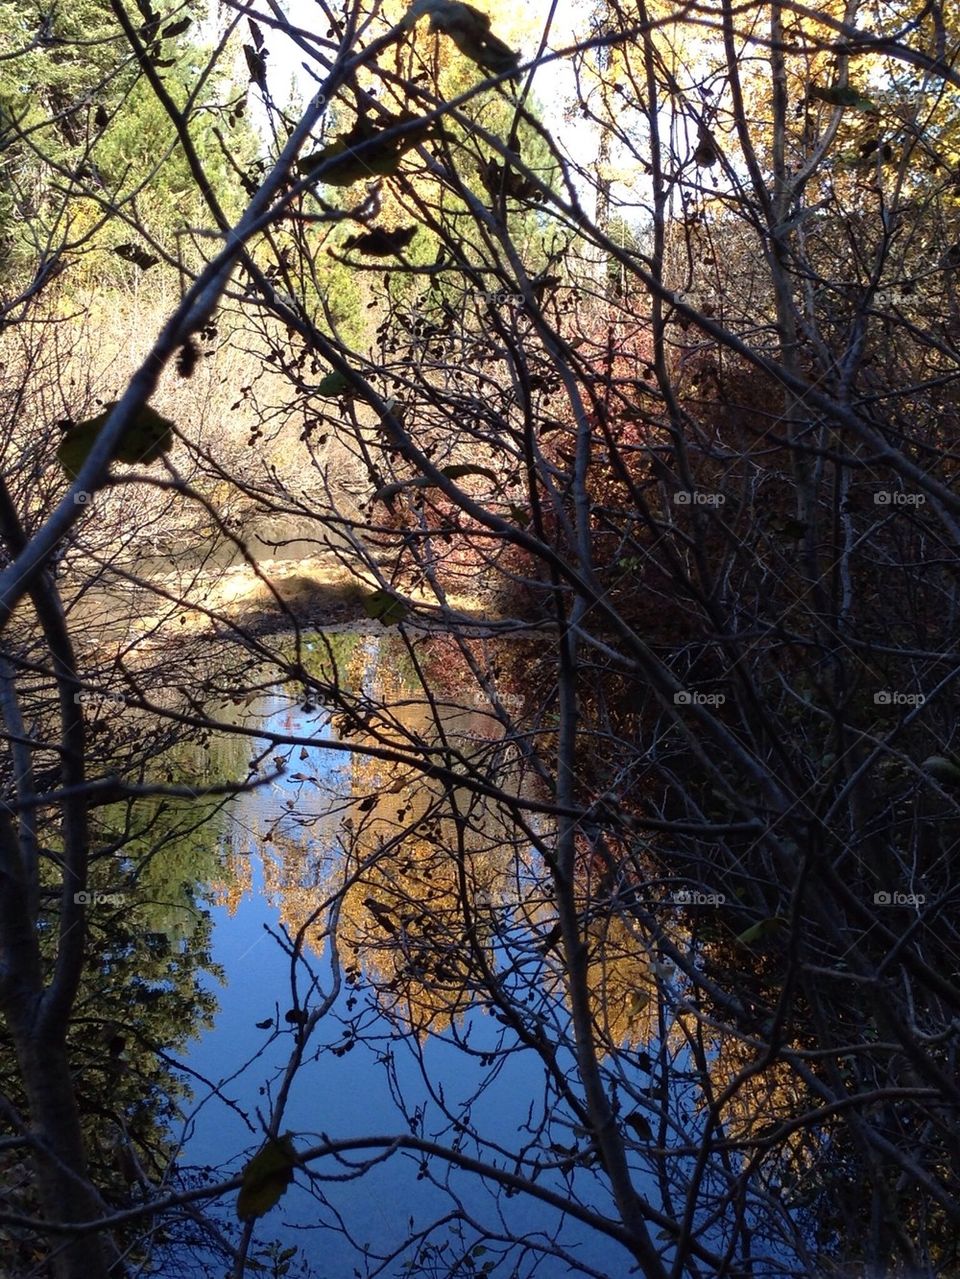 Reflective pond